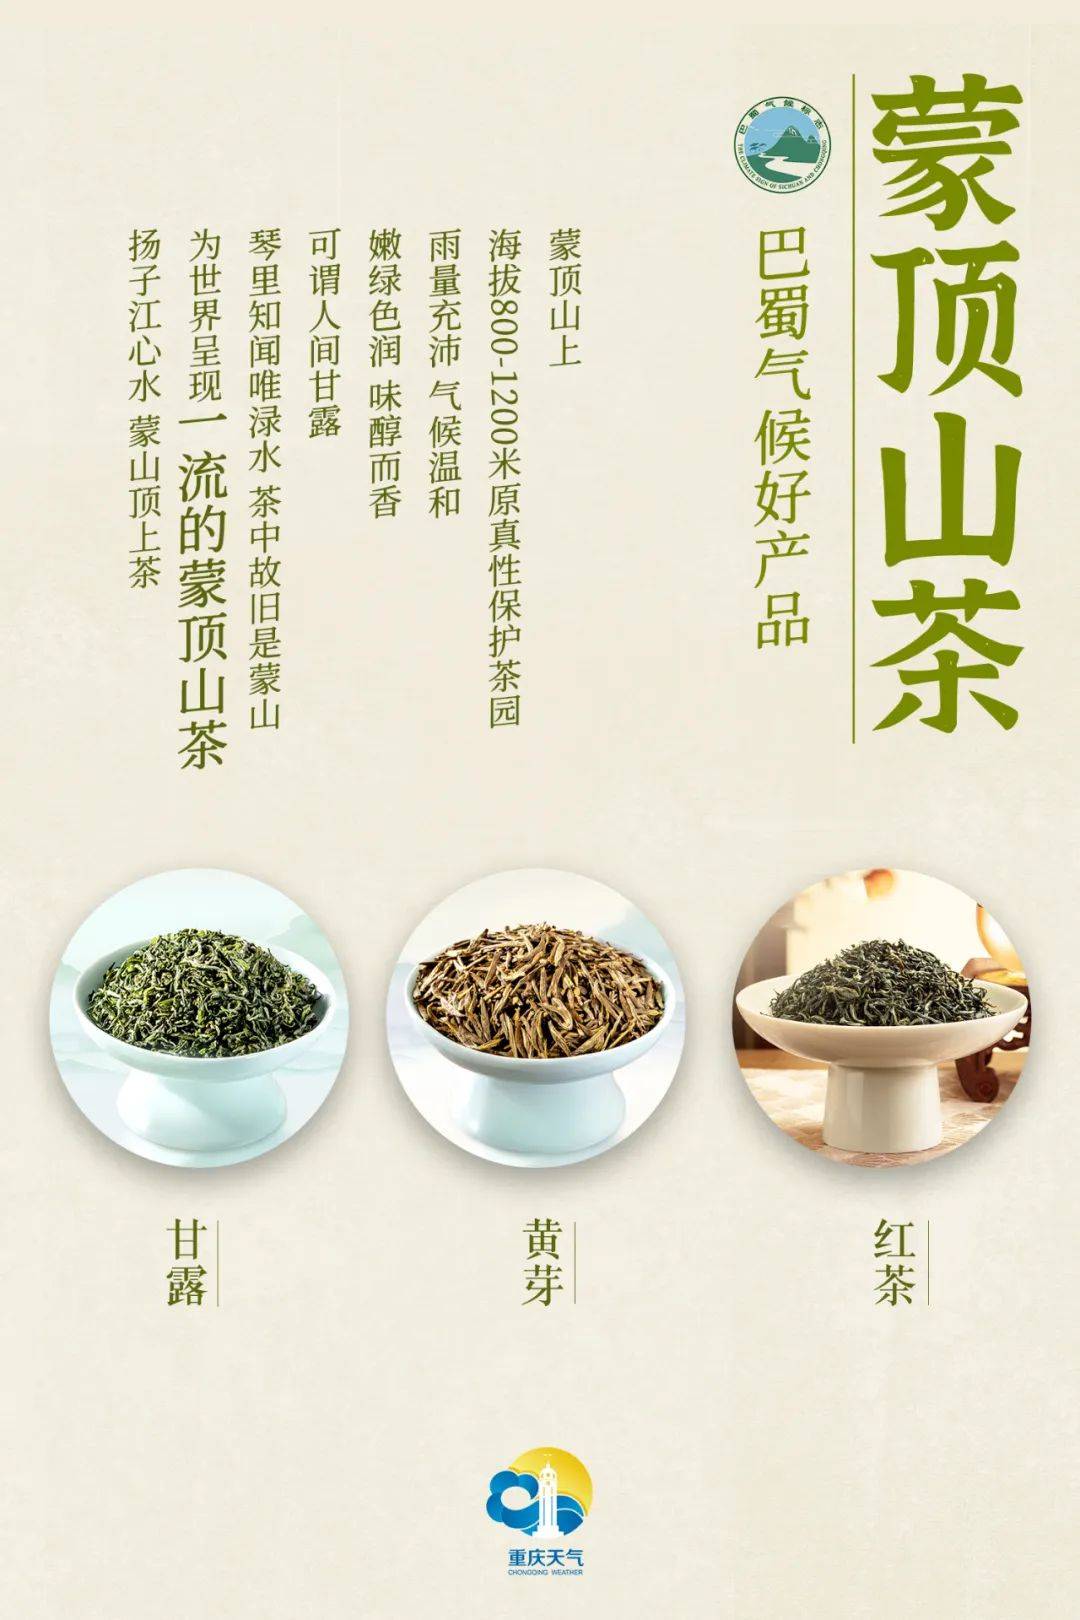 (1)蒙顶甘露中国十大名茶,中国顶级名优绿茶,卷曲型绿茶的代表,源自